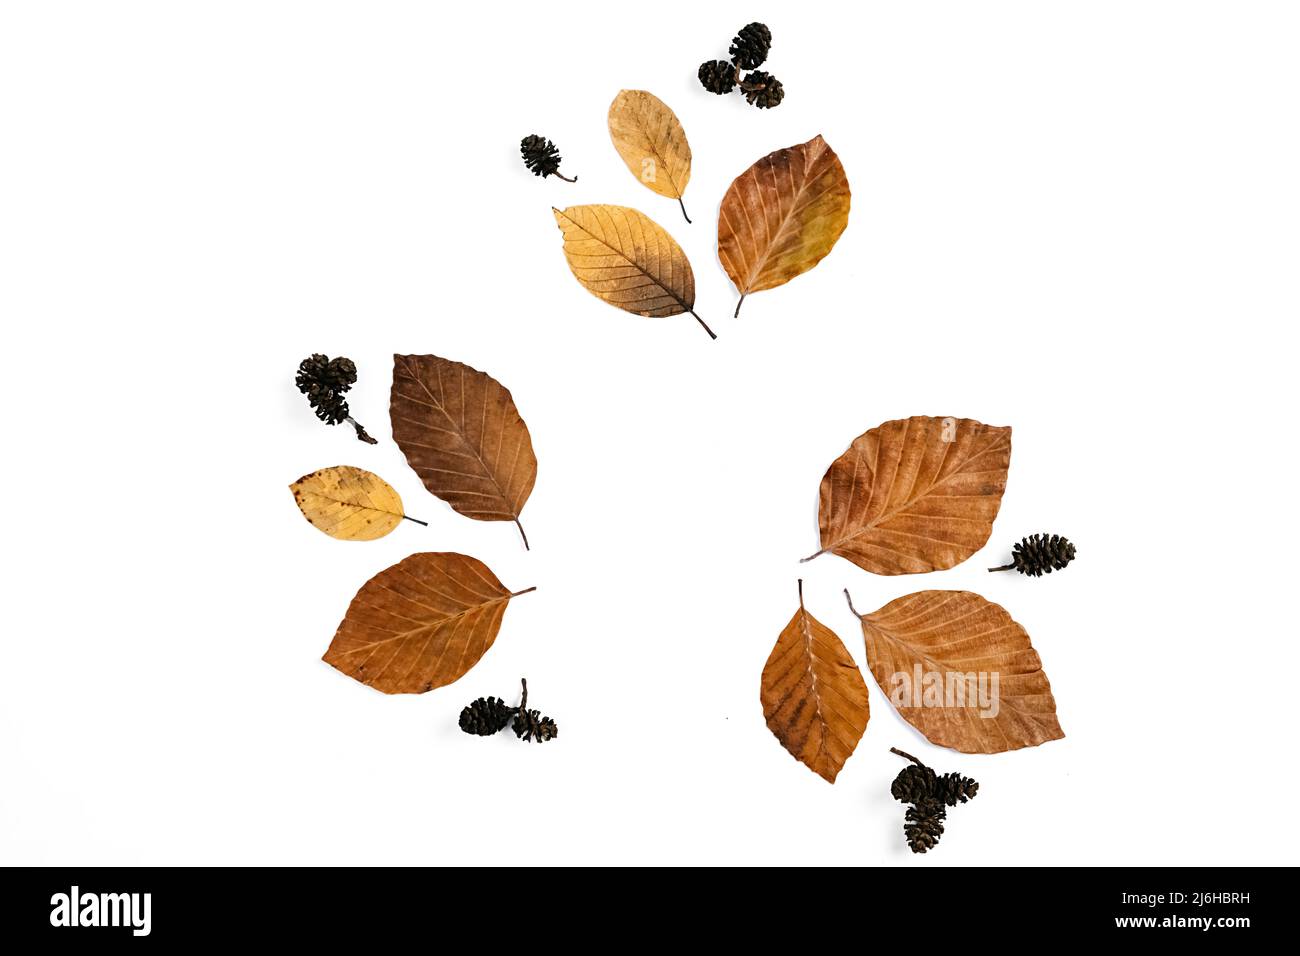 Kreative Herbst flach legen oben Draufsicht getrocknete Blätter und Kiefernkegel, isoliert auf weißem Studio Hintergrund kopieren Raum minimal Stil. Herbst Saison Sturm Stockfoto